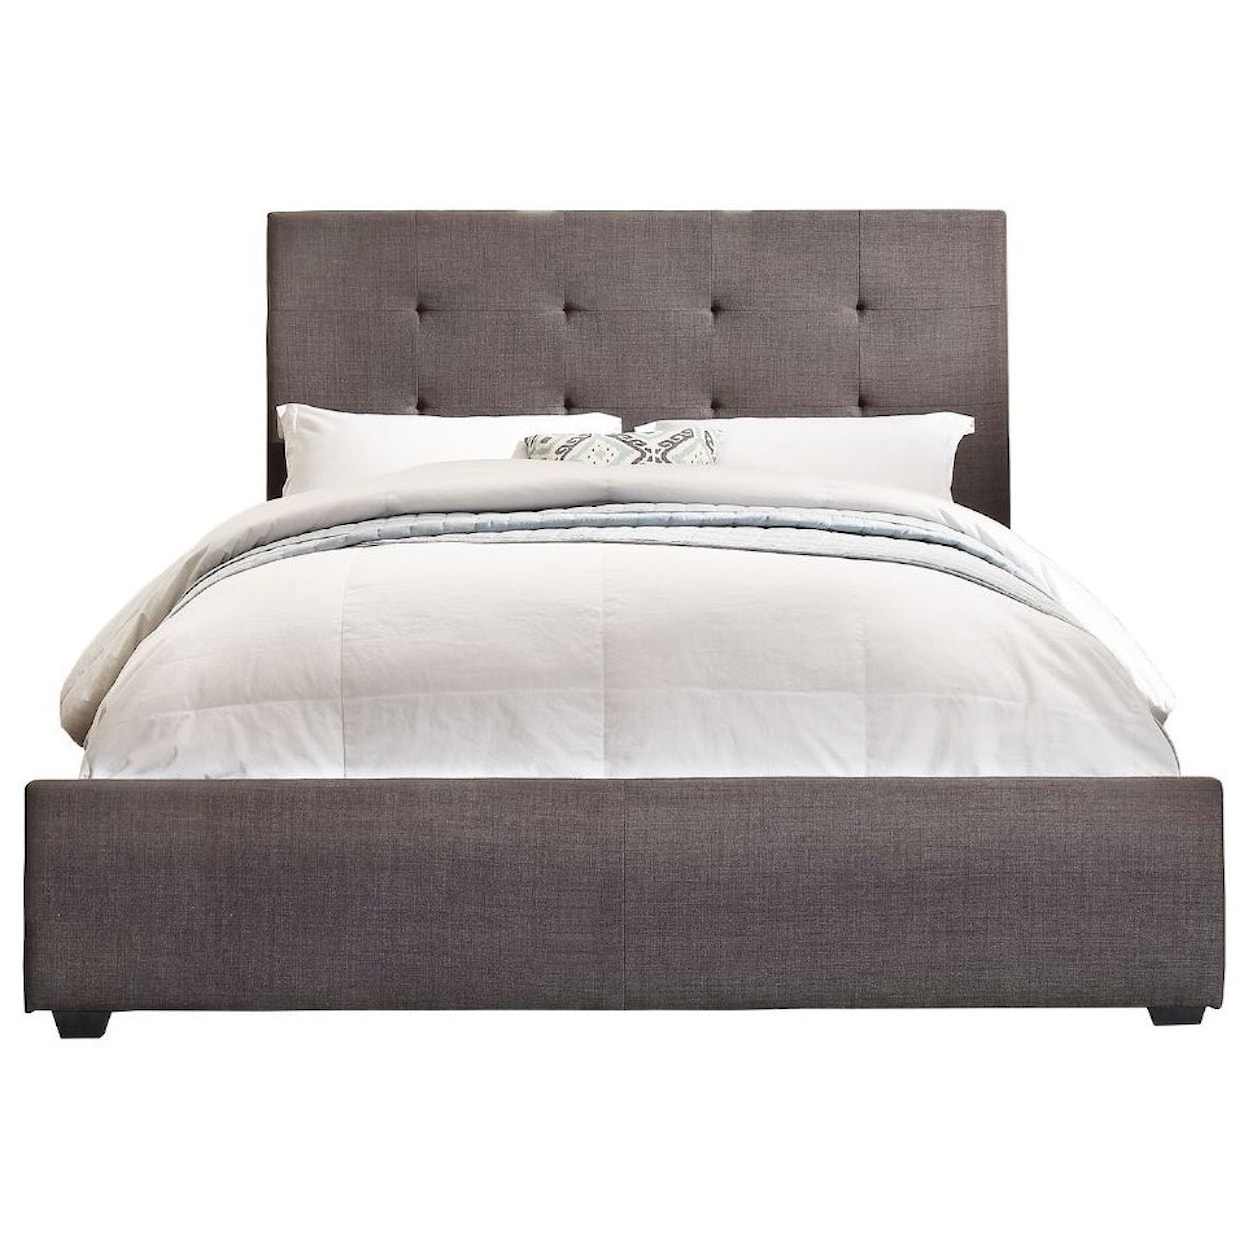 Homelegance Furniture Cadmus Full Upholstered Bed